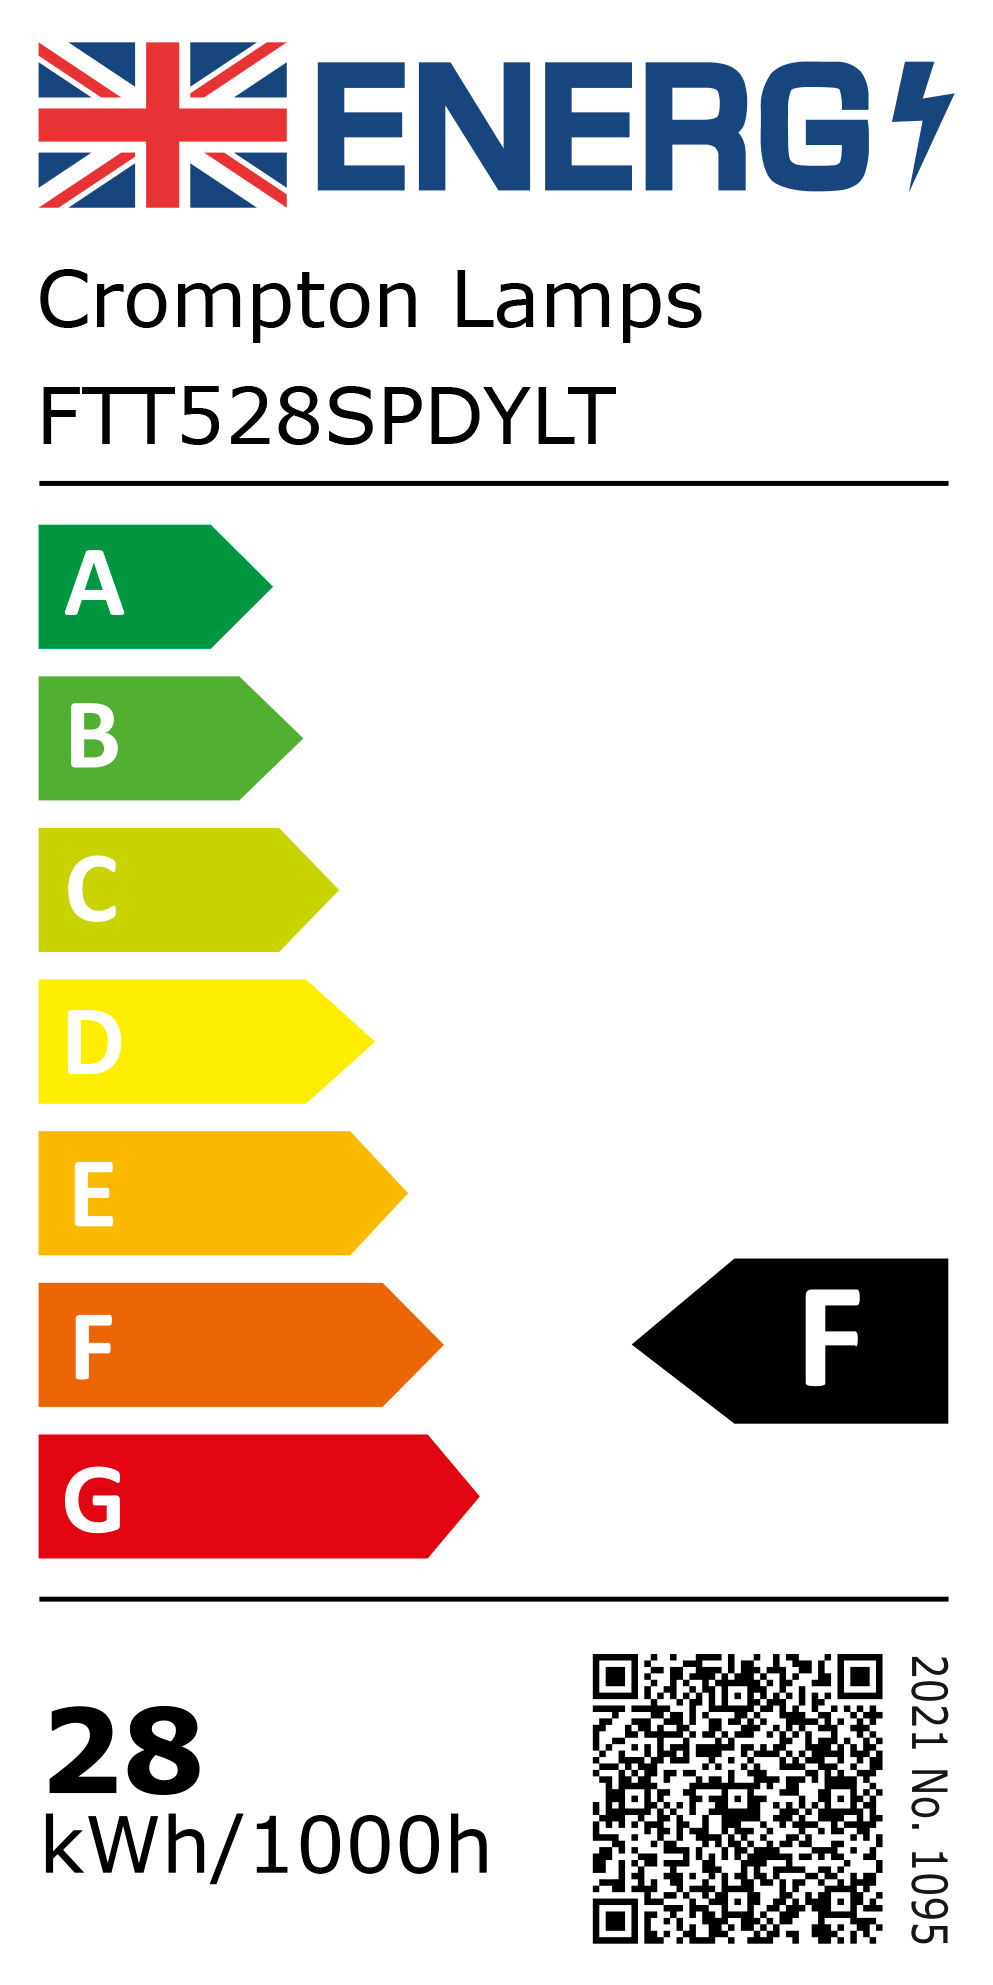 New 2021 Energy Rating Label: Stock Code FTT528SPDYLT